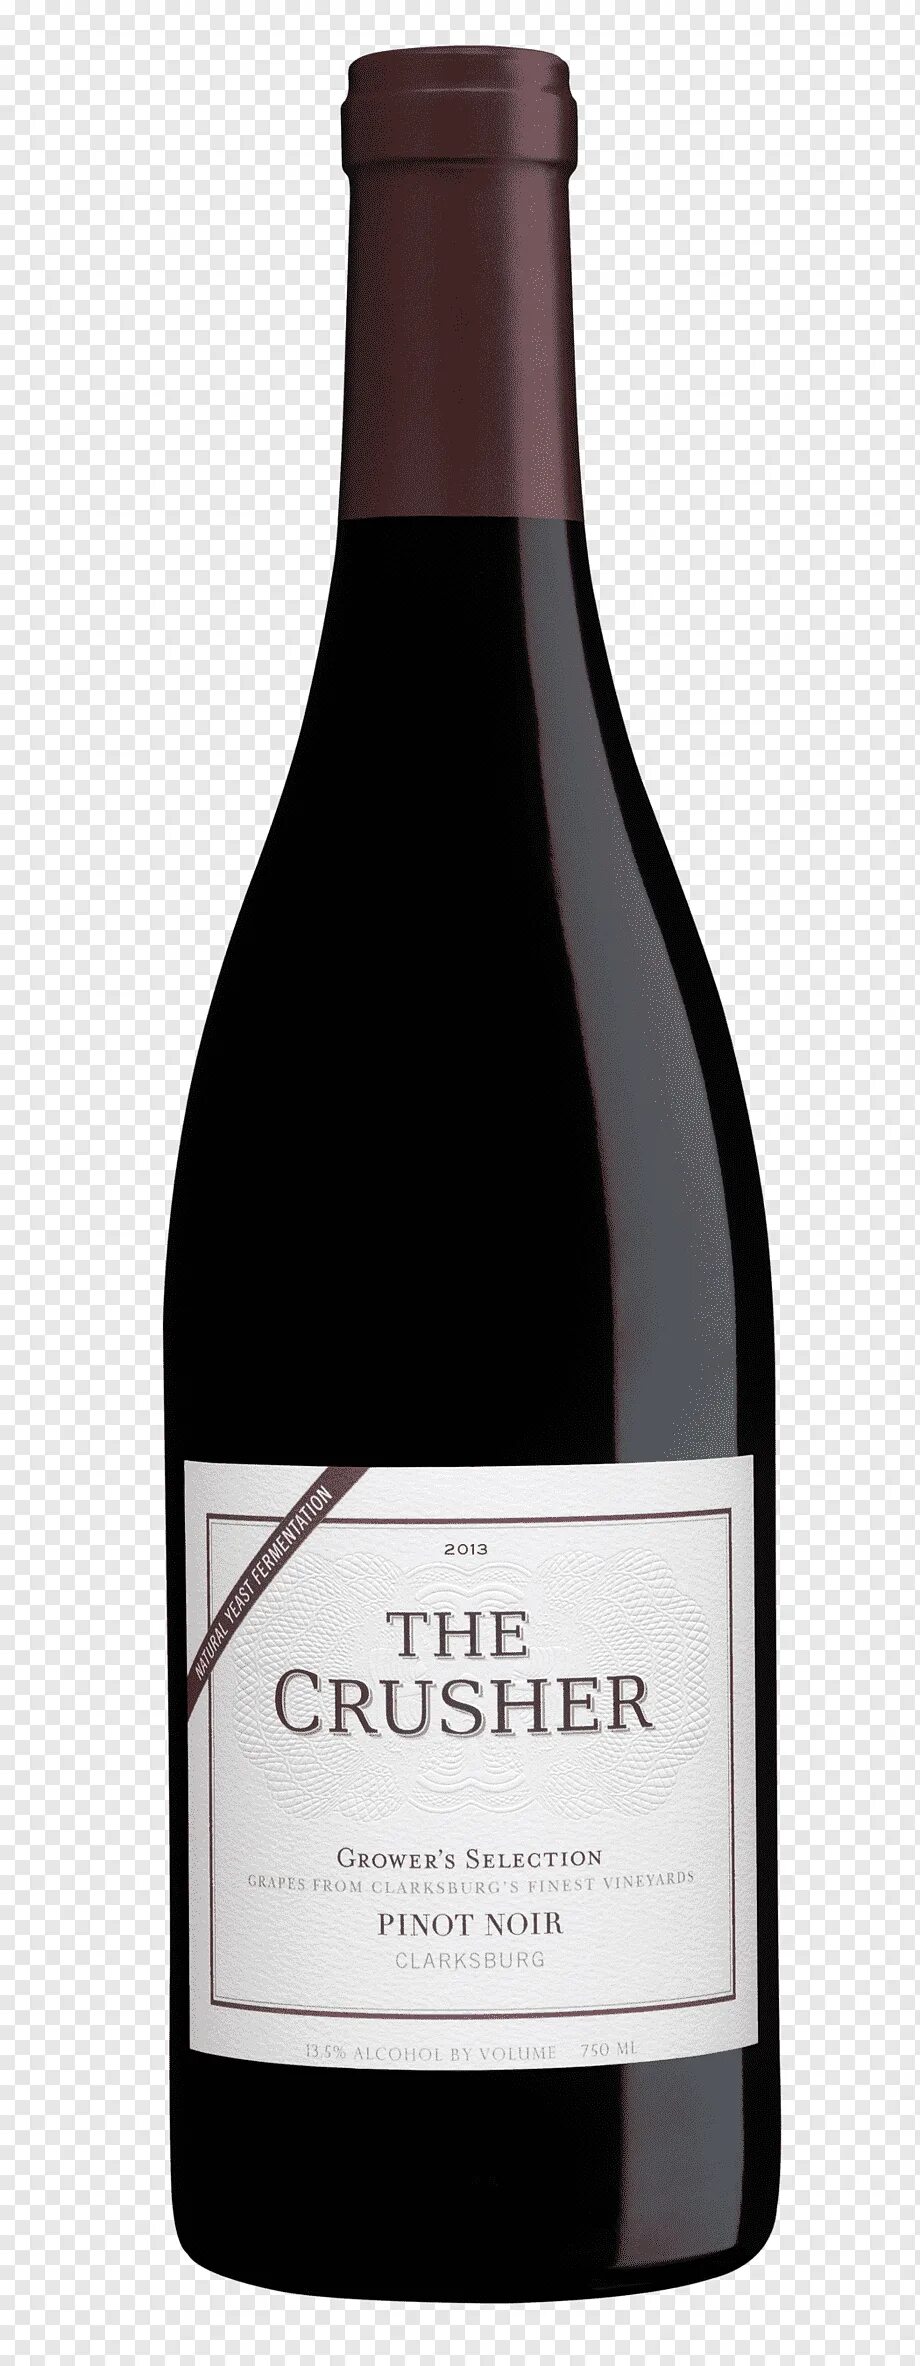 Вино пино нуар. Пино Нуар Шардоне. Pinot Noir вино вишня. Вино Шардоне Пино Нуар. Бутылка вина Пино Нуар.